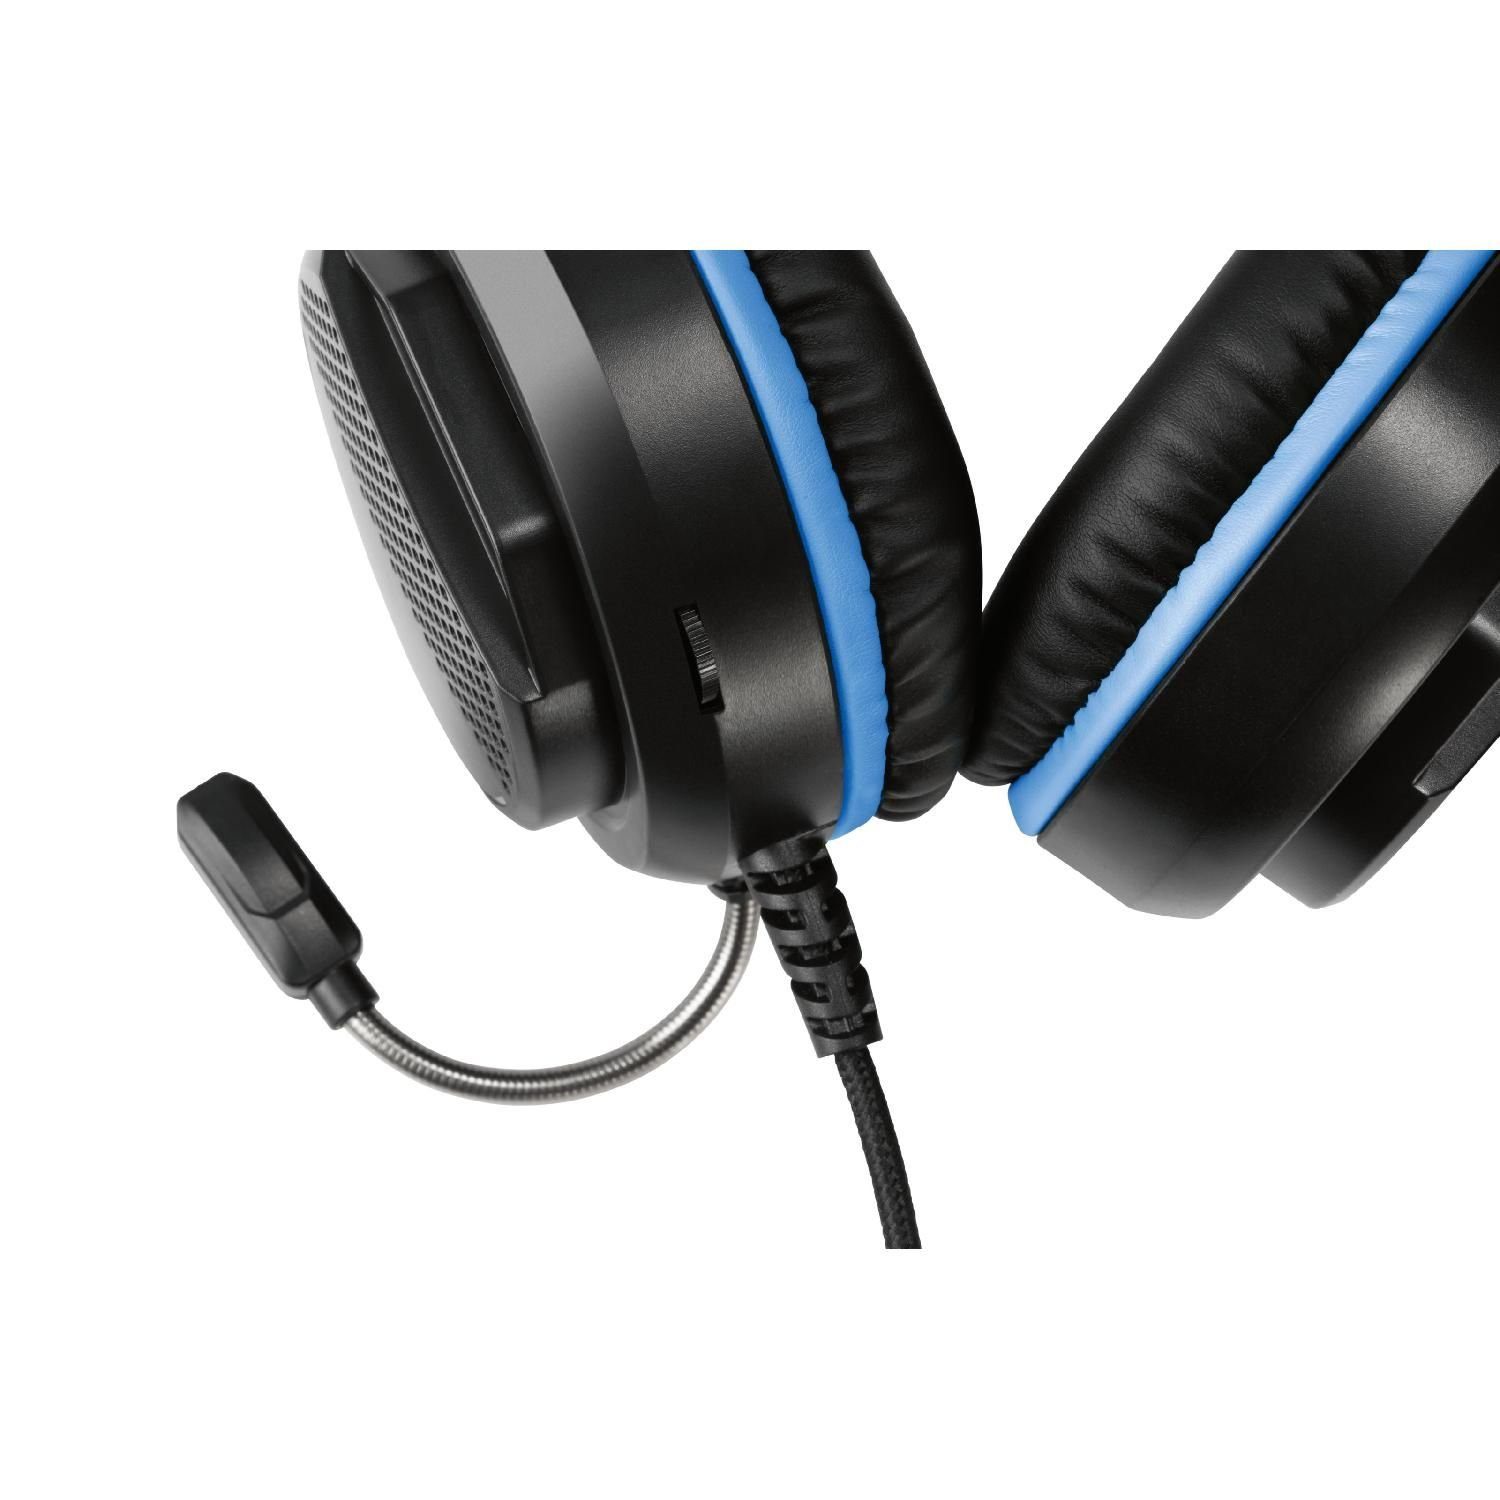 DELTACO für schwarz Mikrofon, 5 Gaming Herstellergarantie) PS5 Stereo inkl. Headset Headset Jahre Kopfhörer (außenstehendes